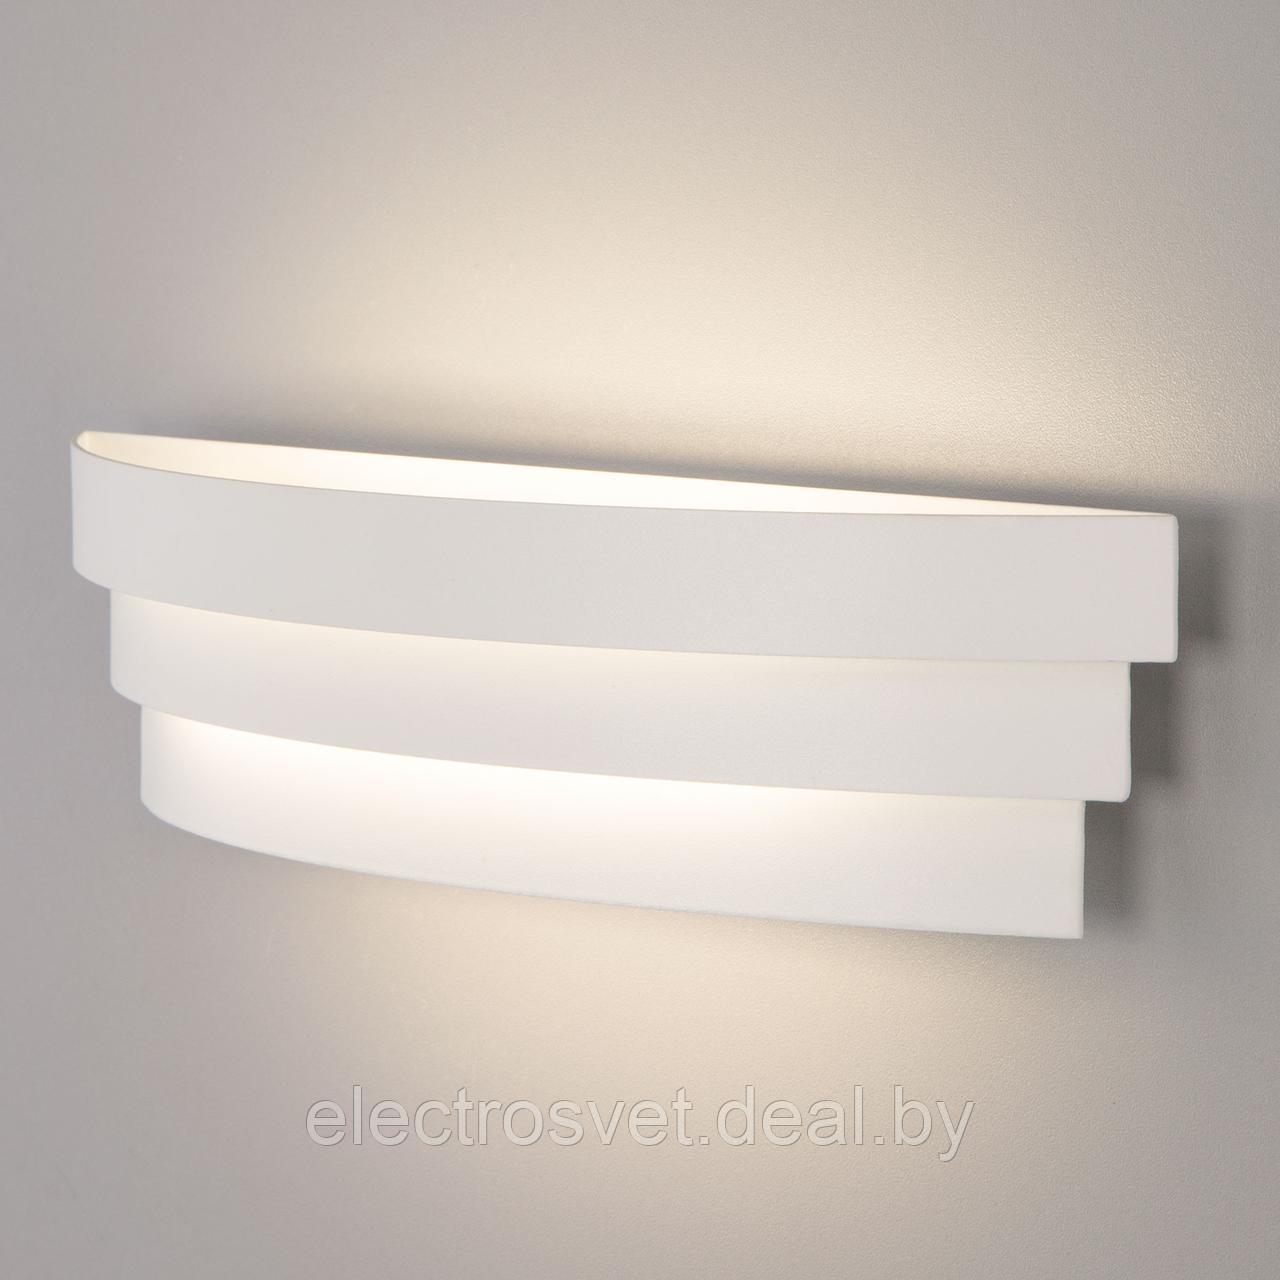 Riara LED белый настенный светодиодный светильник